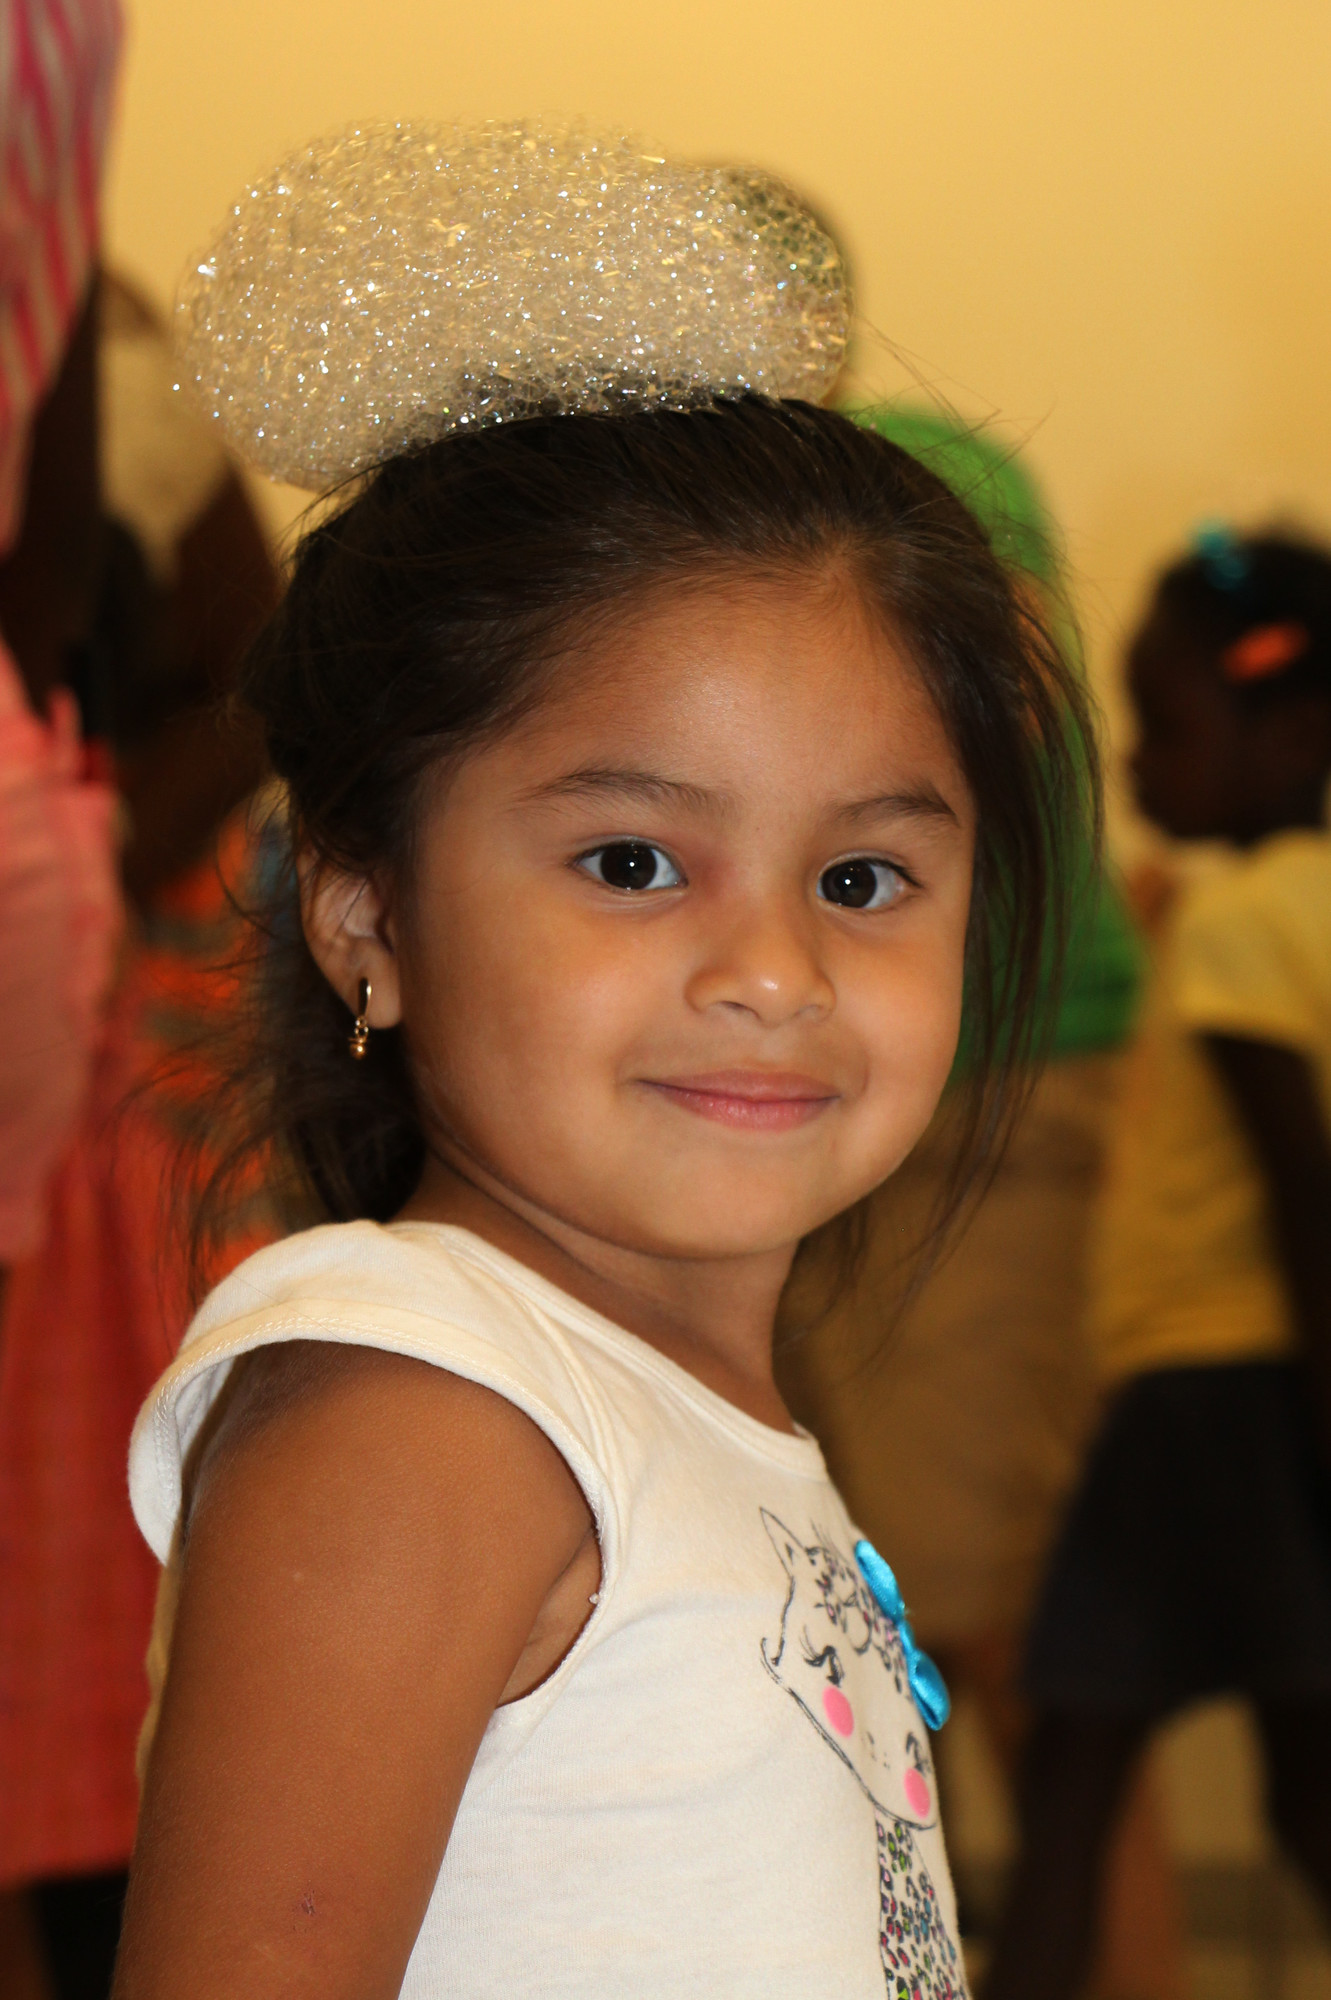 Valerie Nunez, 2, wore a bubble hat.